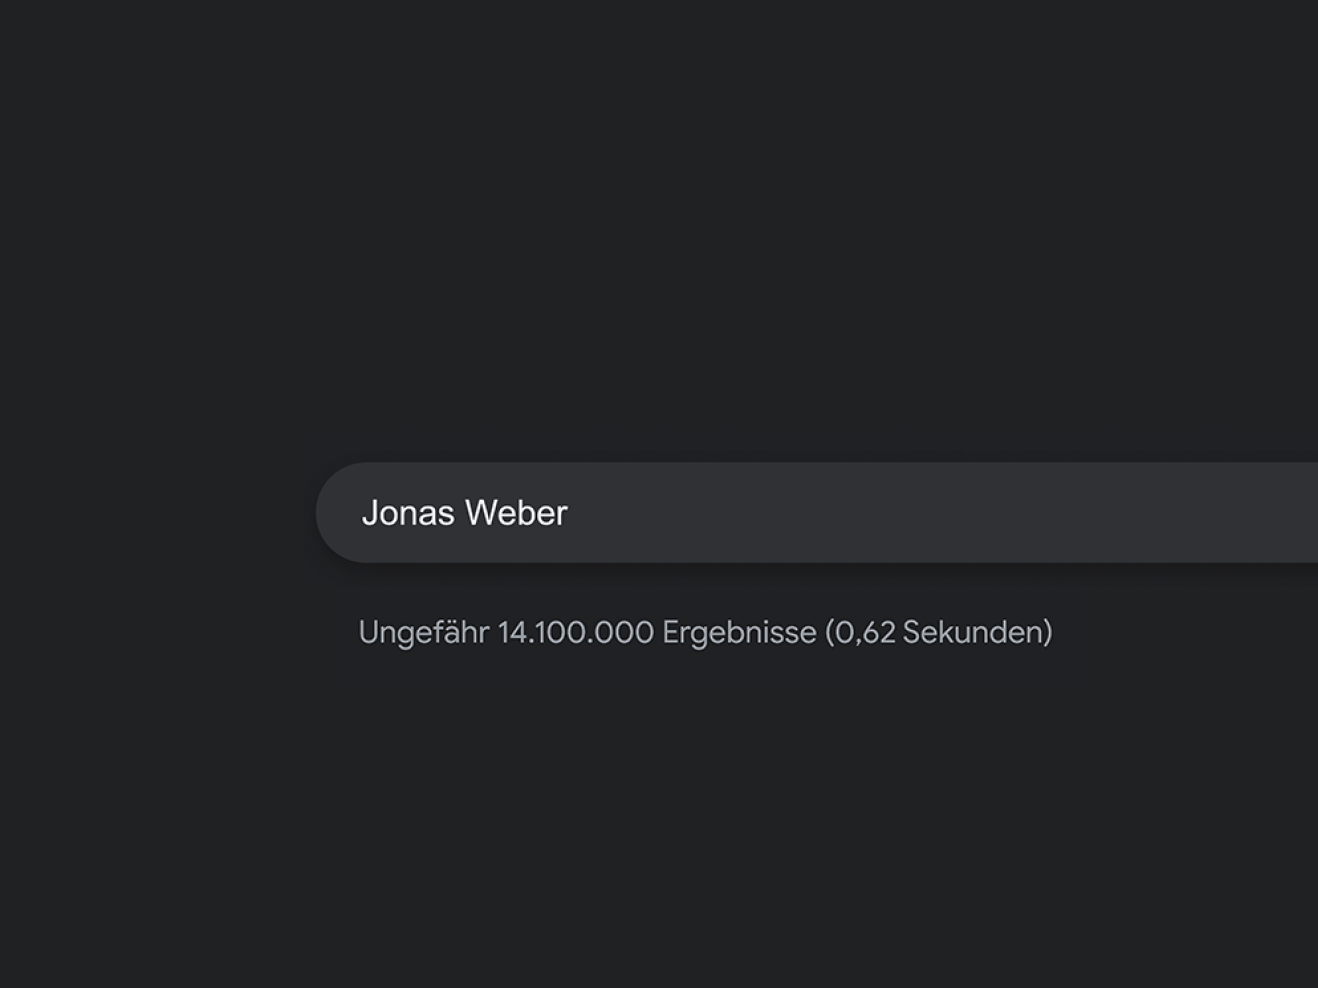 Vor schwarzem Hintergrund ist das Suchfeld einer Suchmaschine zu sehen, darin steht "Jonas Weber" und darunter "Ungefährt 14.100.000 Ergebnisse (0.62 Sekunden).